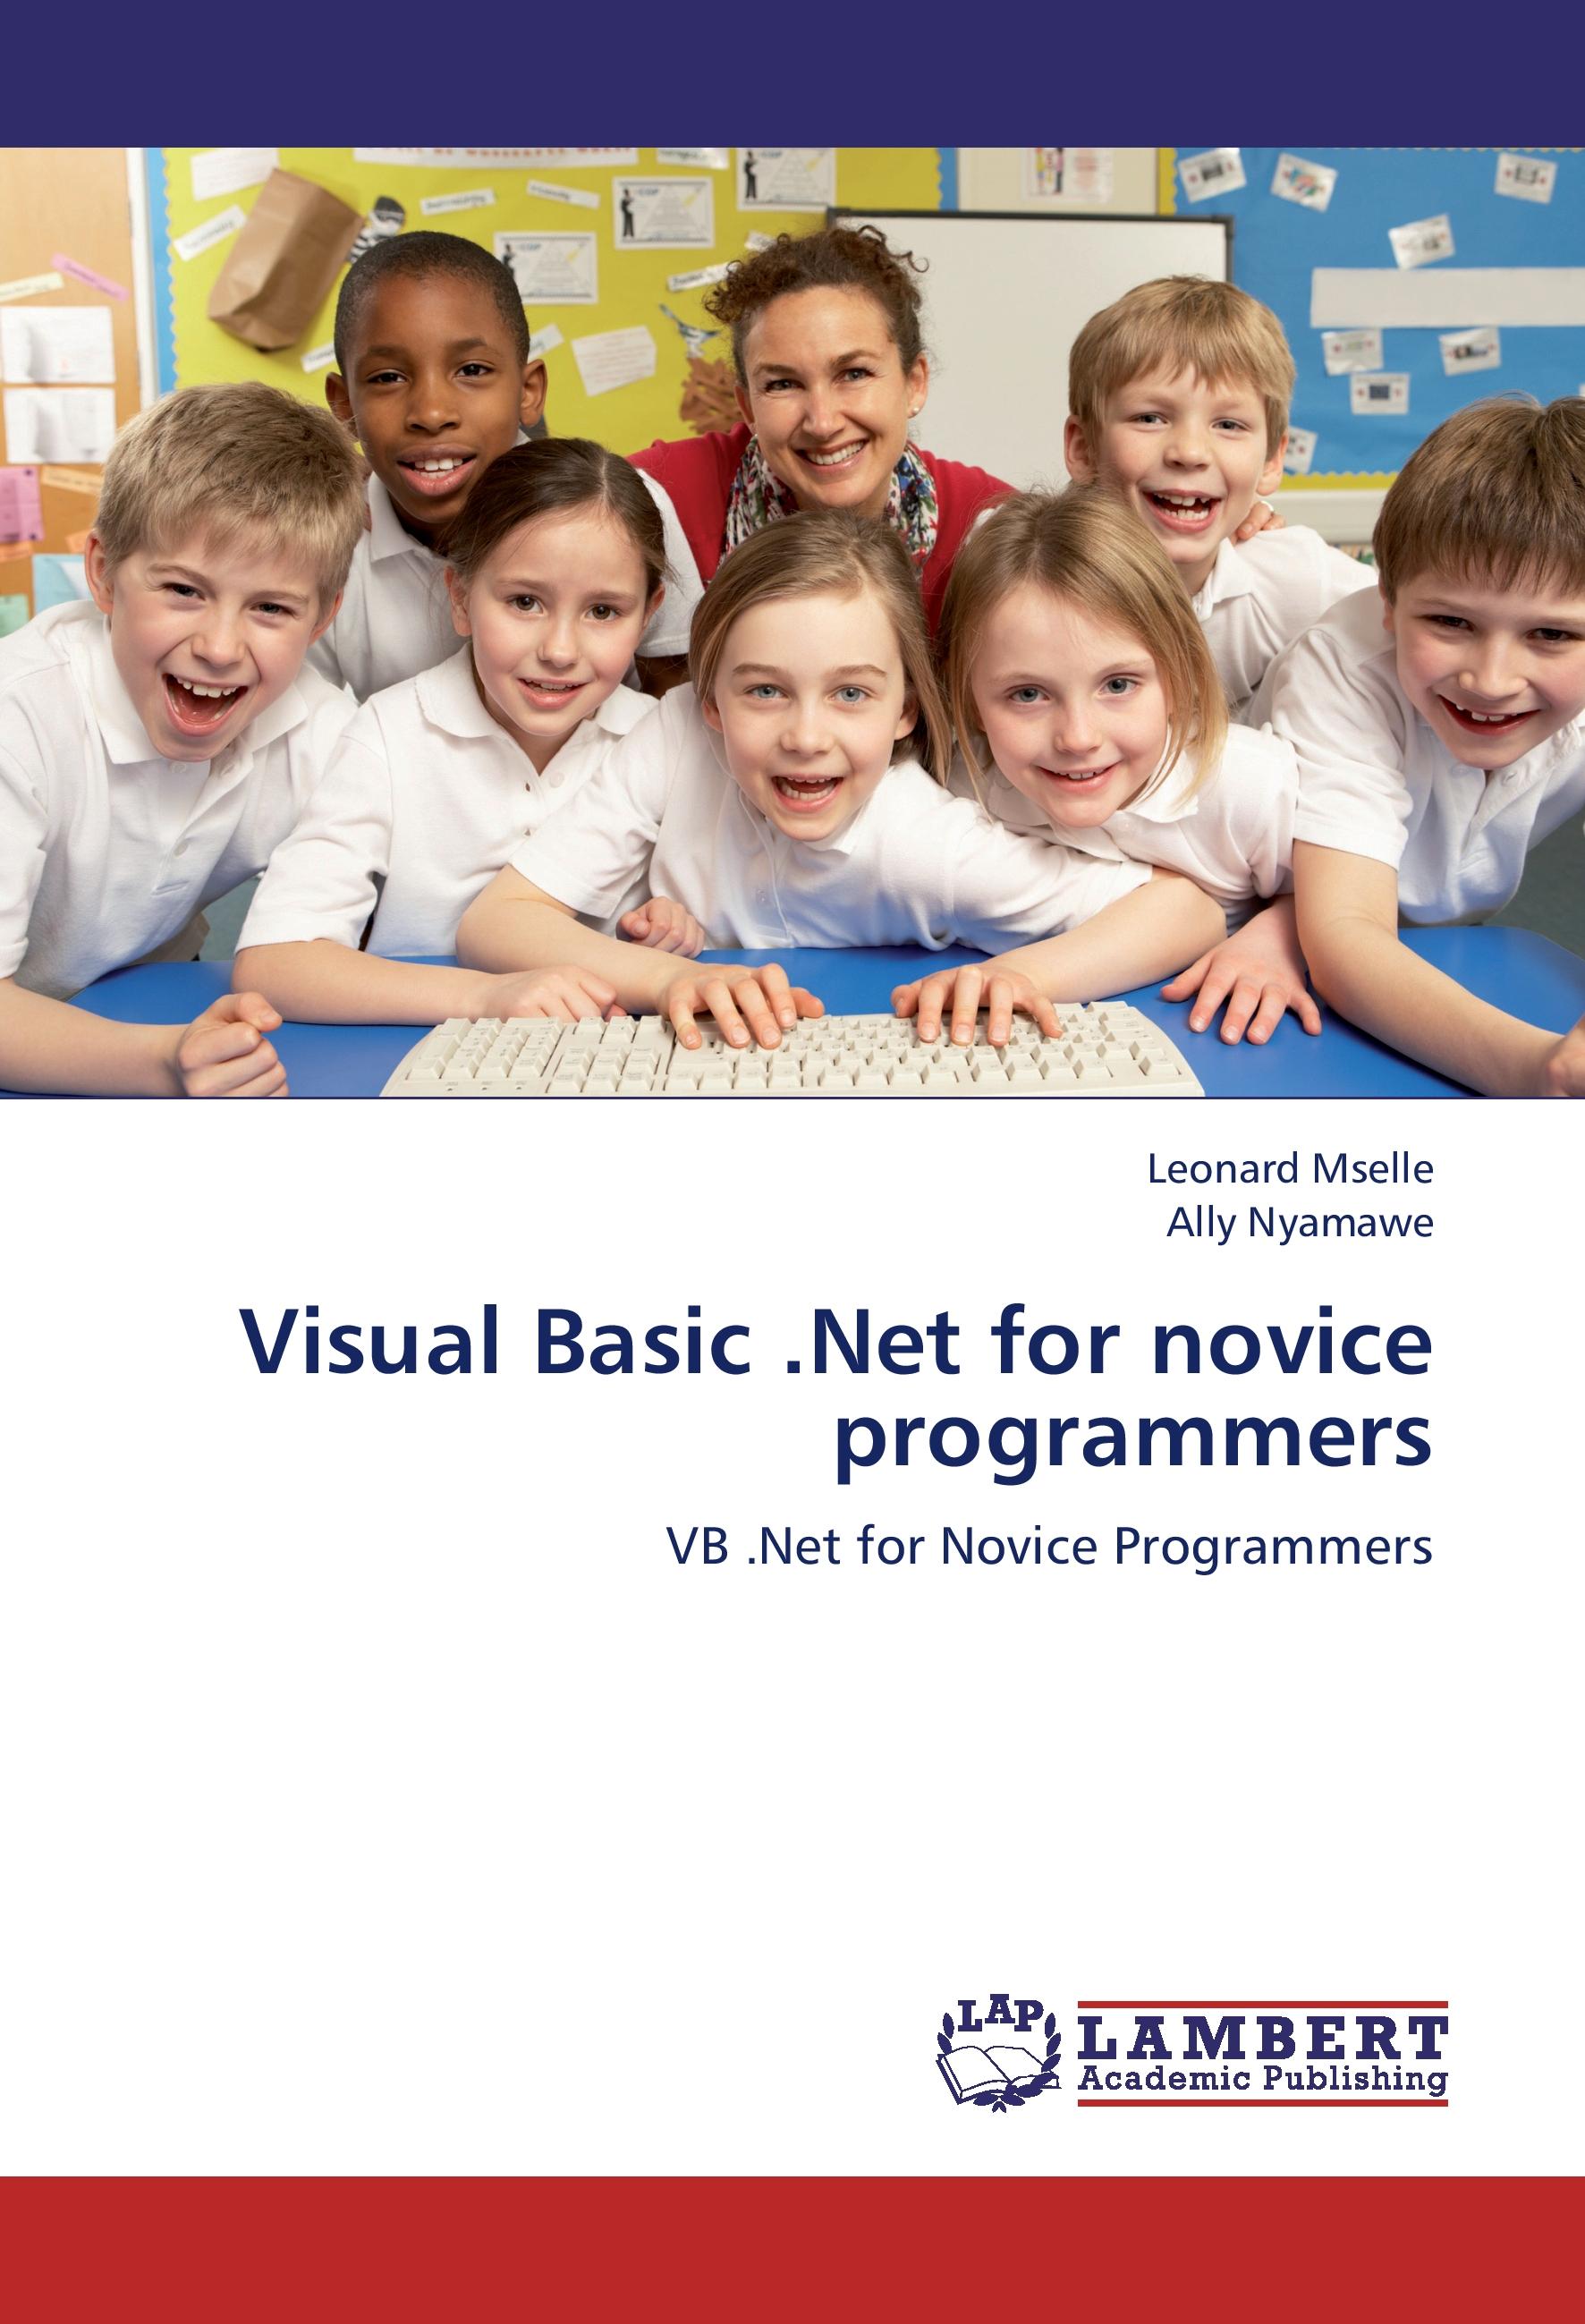 Visual Basic .Net for novice programmers / VB .Net for Novice Programmers / Leonard Mselle (u. a.) / Taschenbuch / Paperback / 328 S. / Englisch / 2012 / LAP Lambert Academic Publishing - Mselle, Leonard